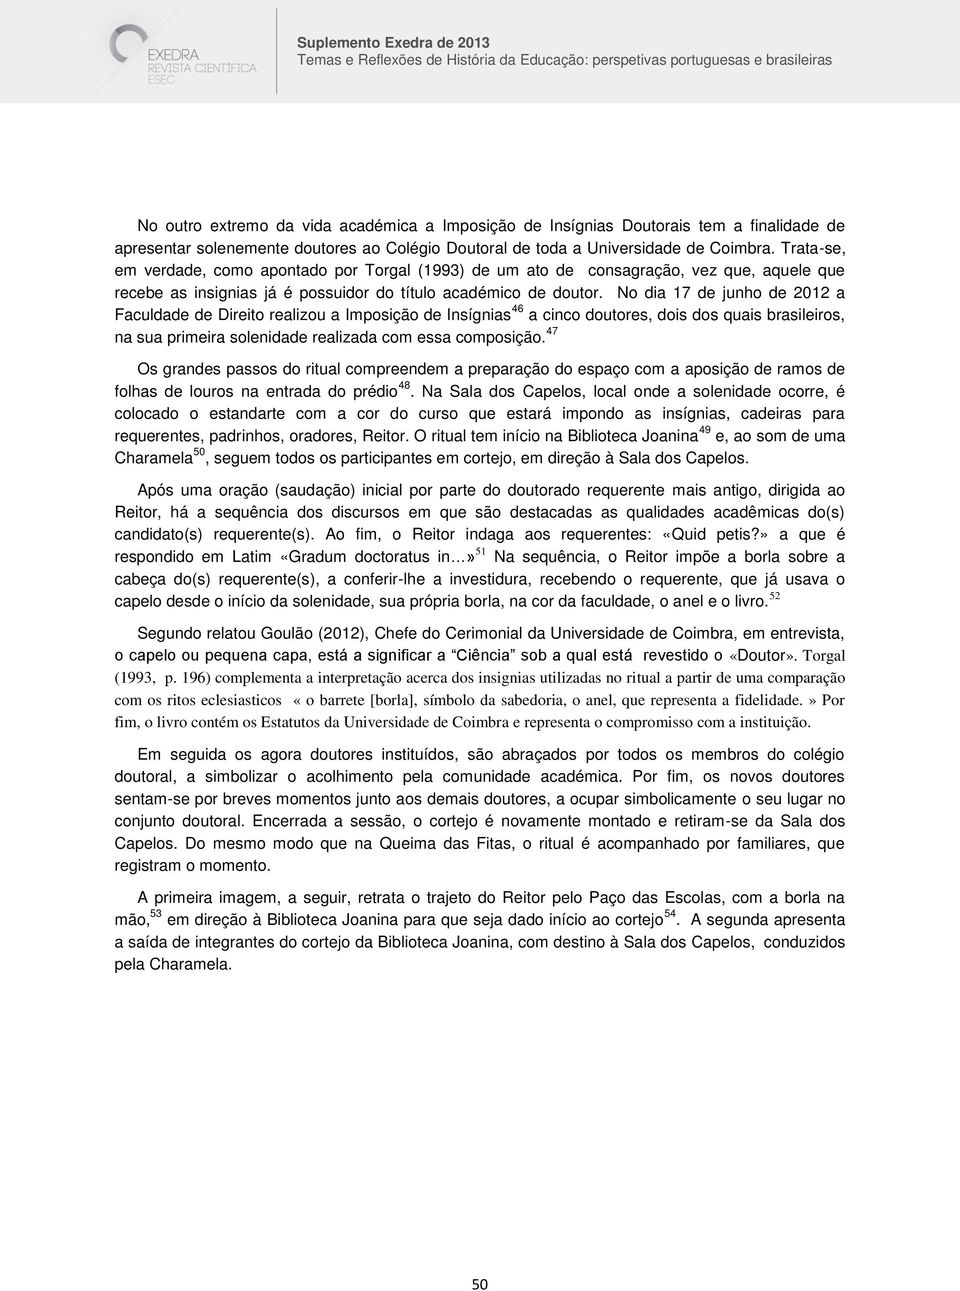 No dia 17 de junho de 2012 a Faculdade de Direito realizou a Imposição de Insígnias 46 a cinco doutores, dois dos quais brasileiros, na sua primeira solenidade realizada com essa composição.